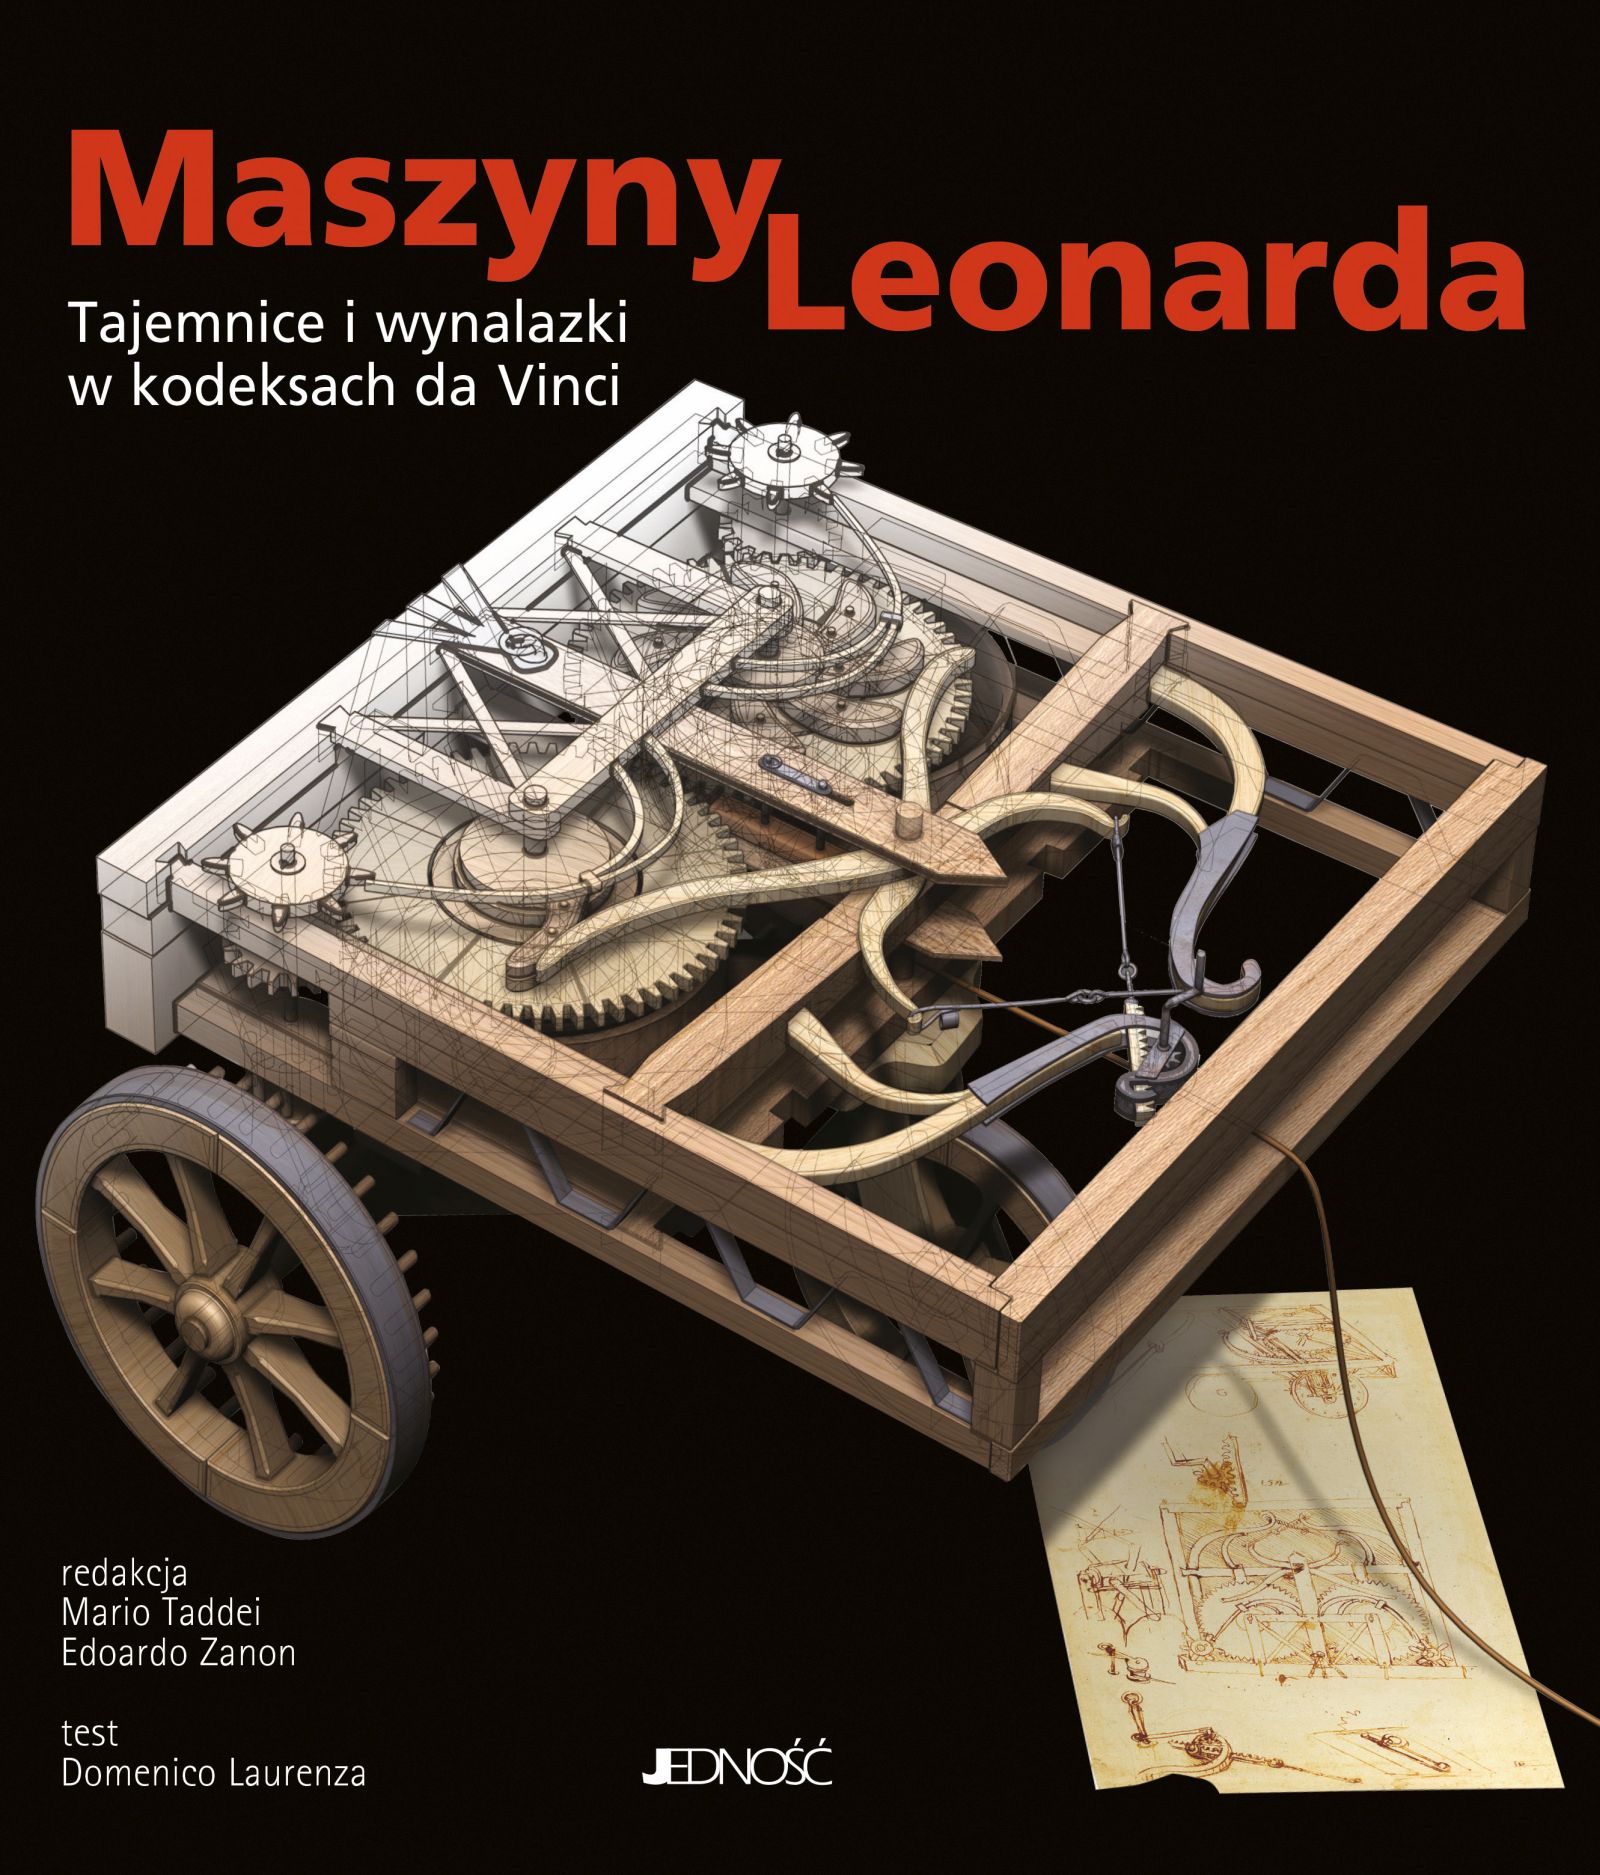 Maszyny Leonarda - wydawnictwo Jedność 